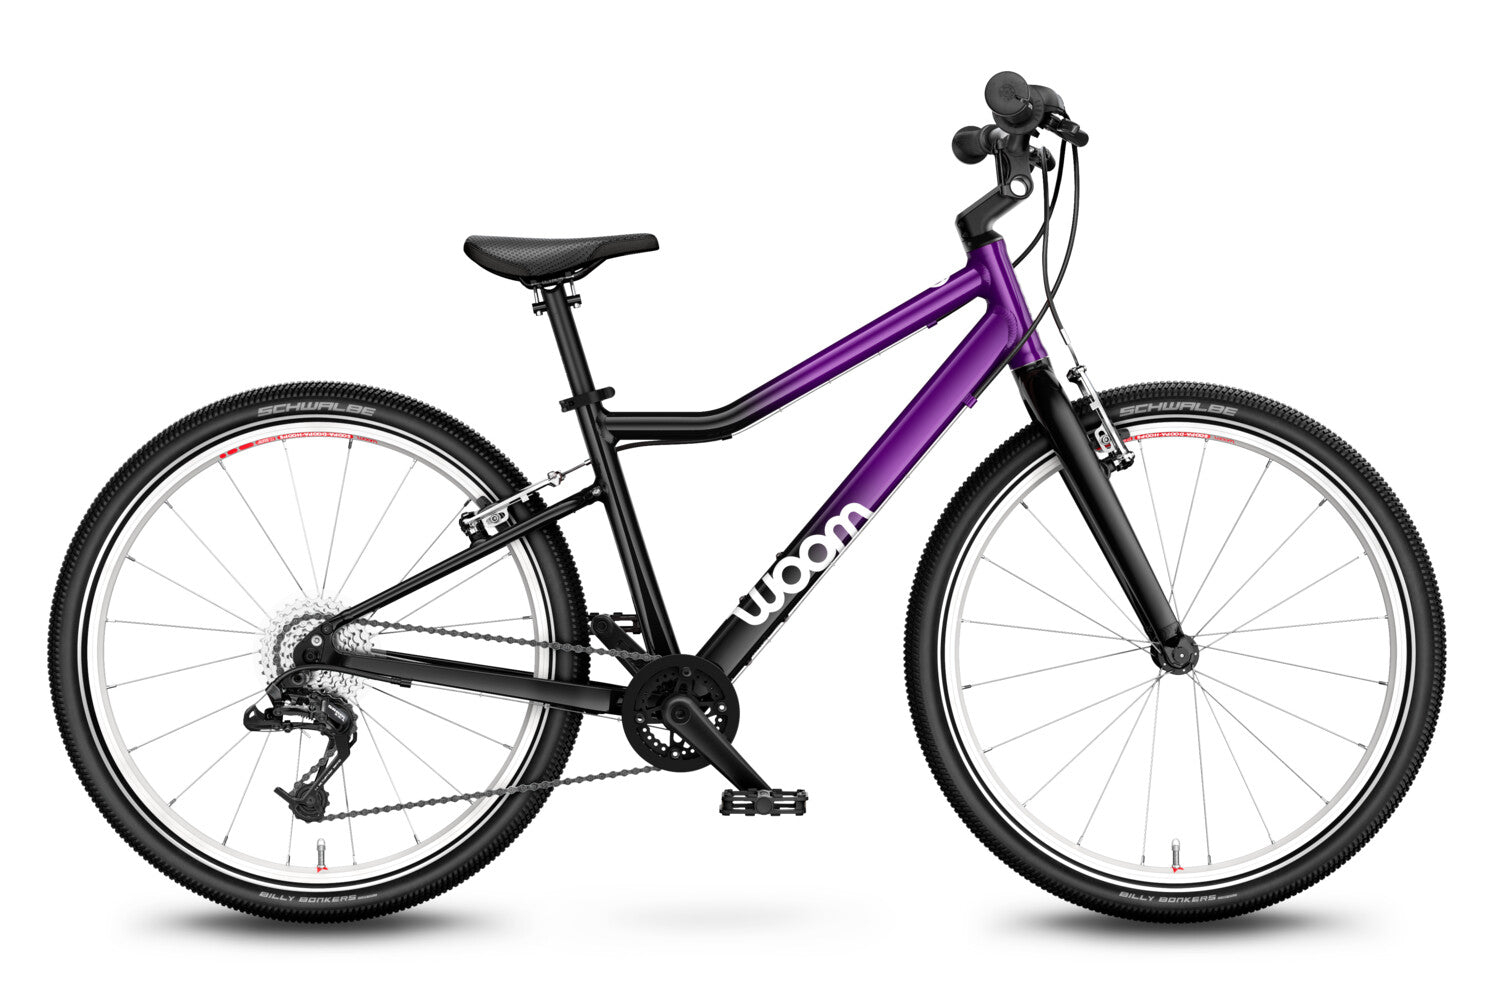 Bicicleta pentru copii Woom 5 Purple Twilight